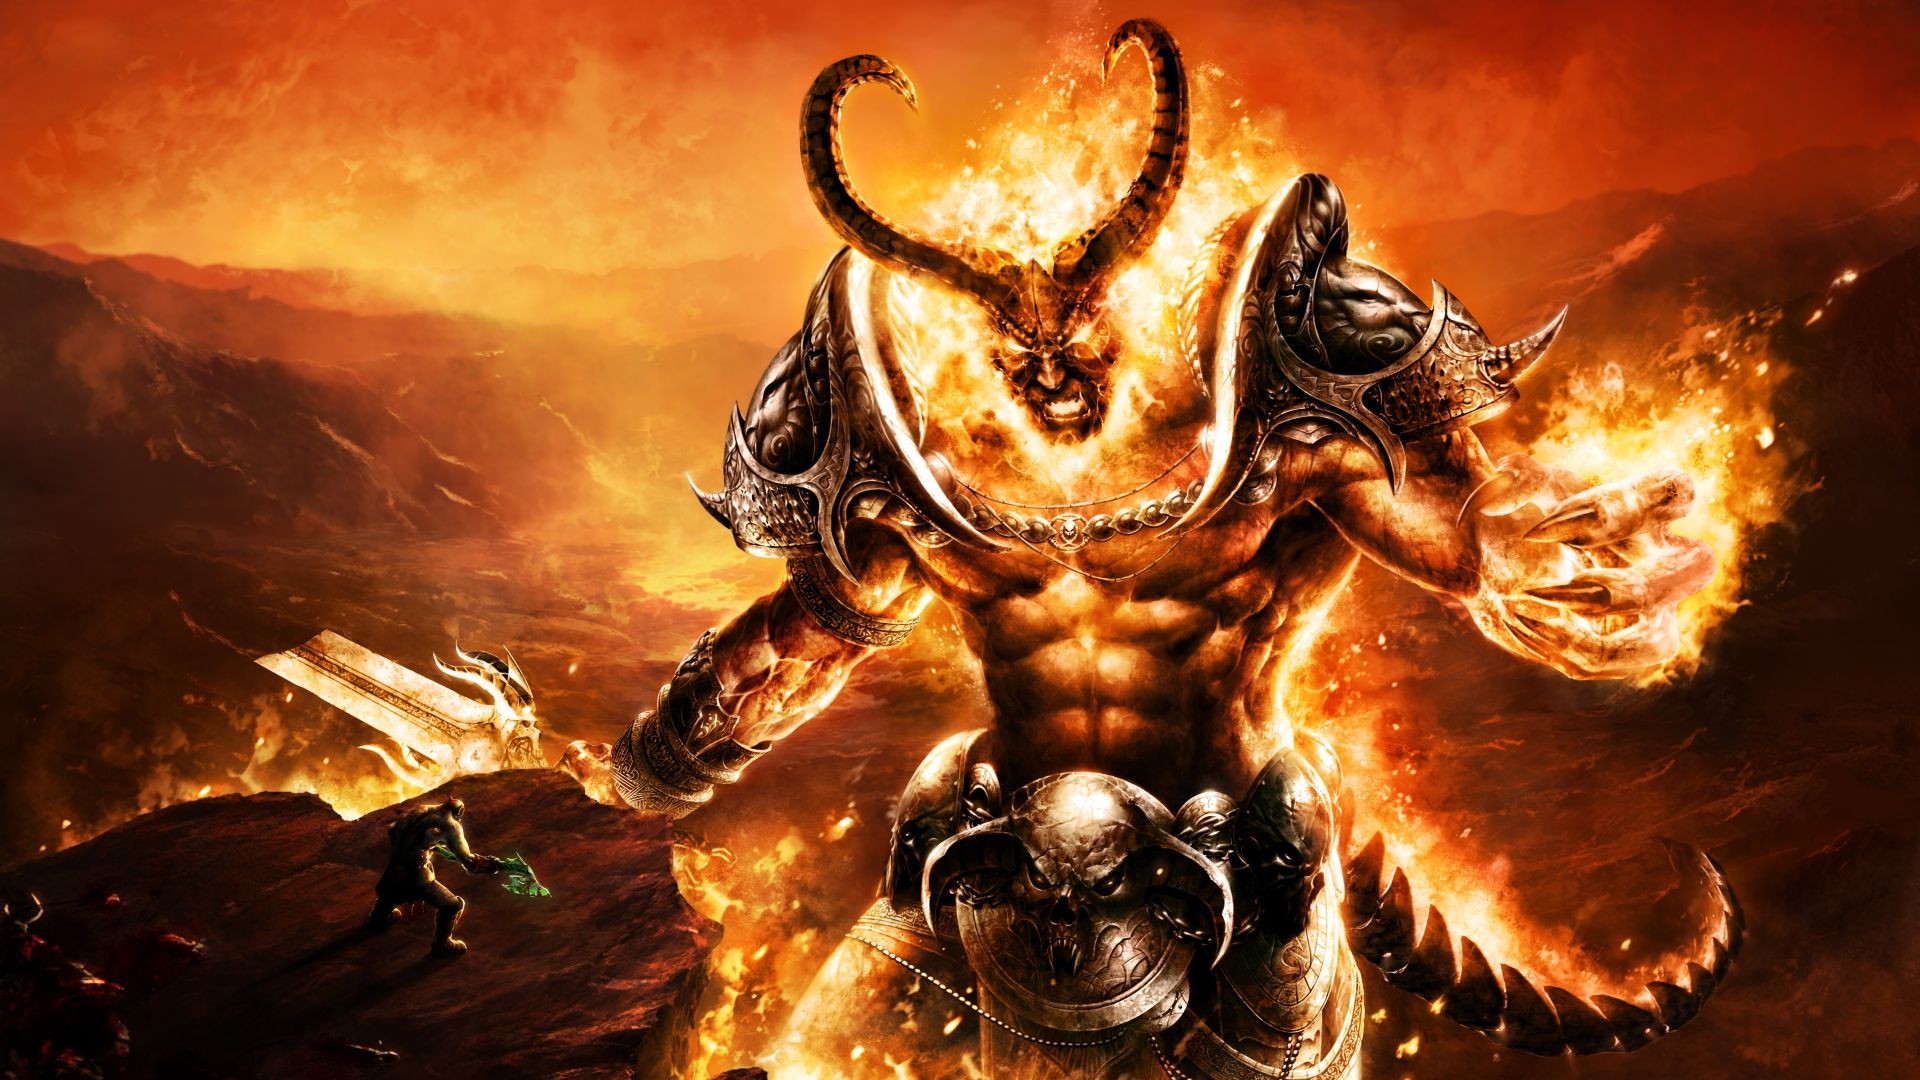 Fantasy demon wallpaper wallpaper. World of warcraft wallpaper, World of warcraft, Warcraft art